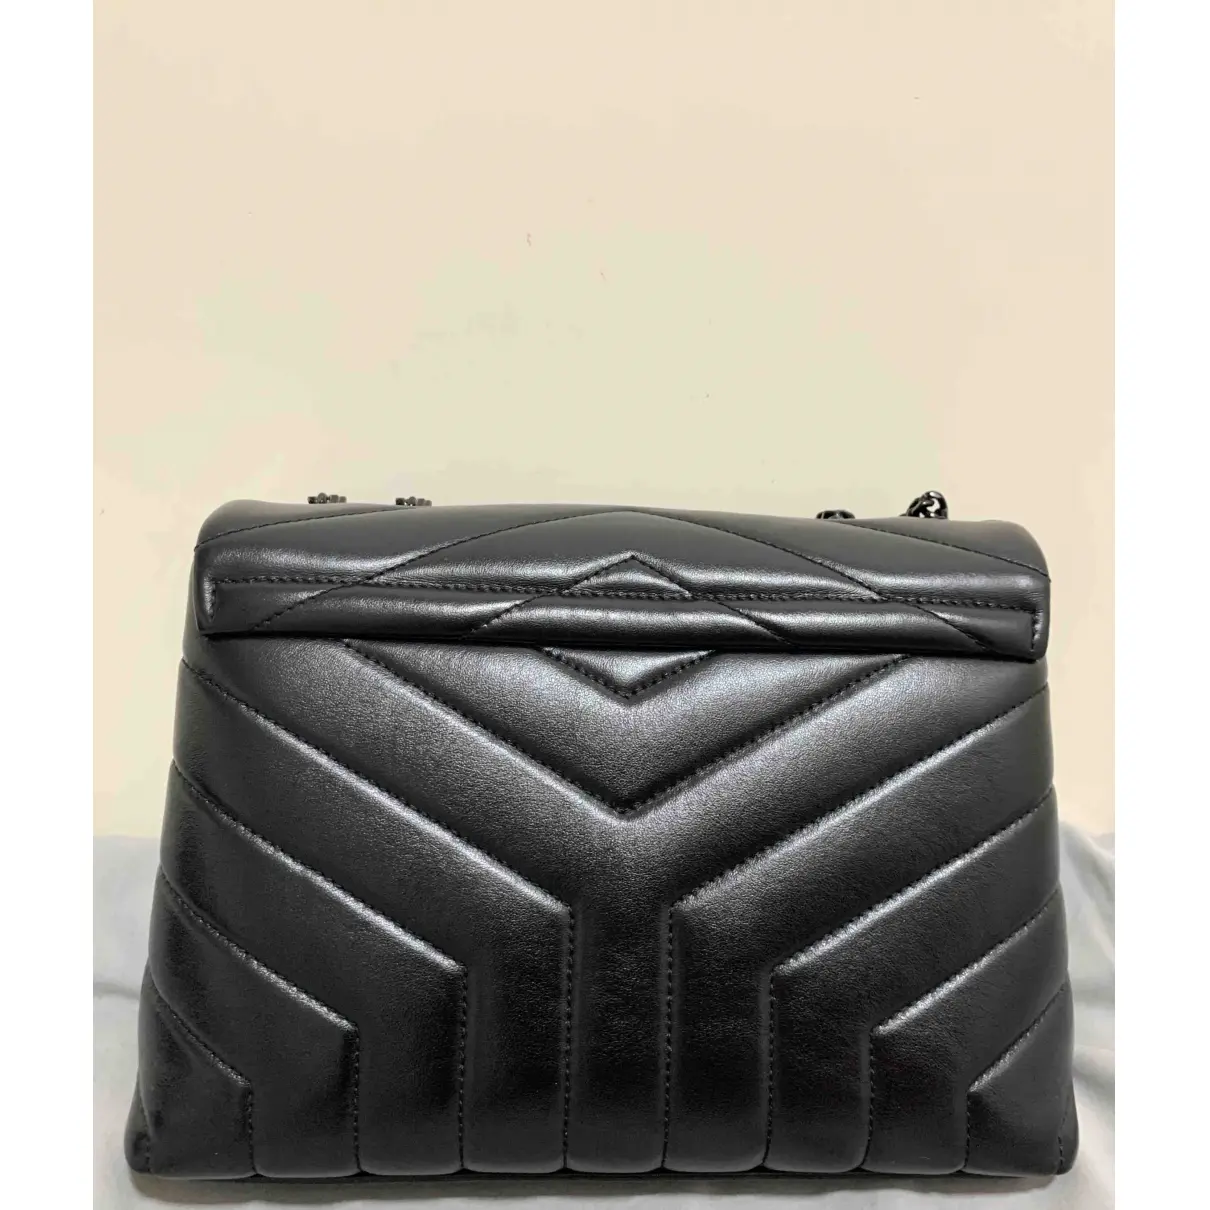 Buy Saint Laurent Loulou leather handbag online